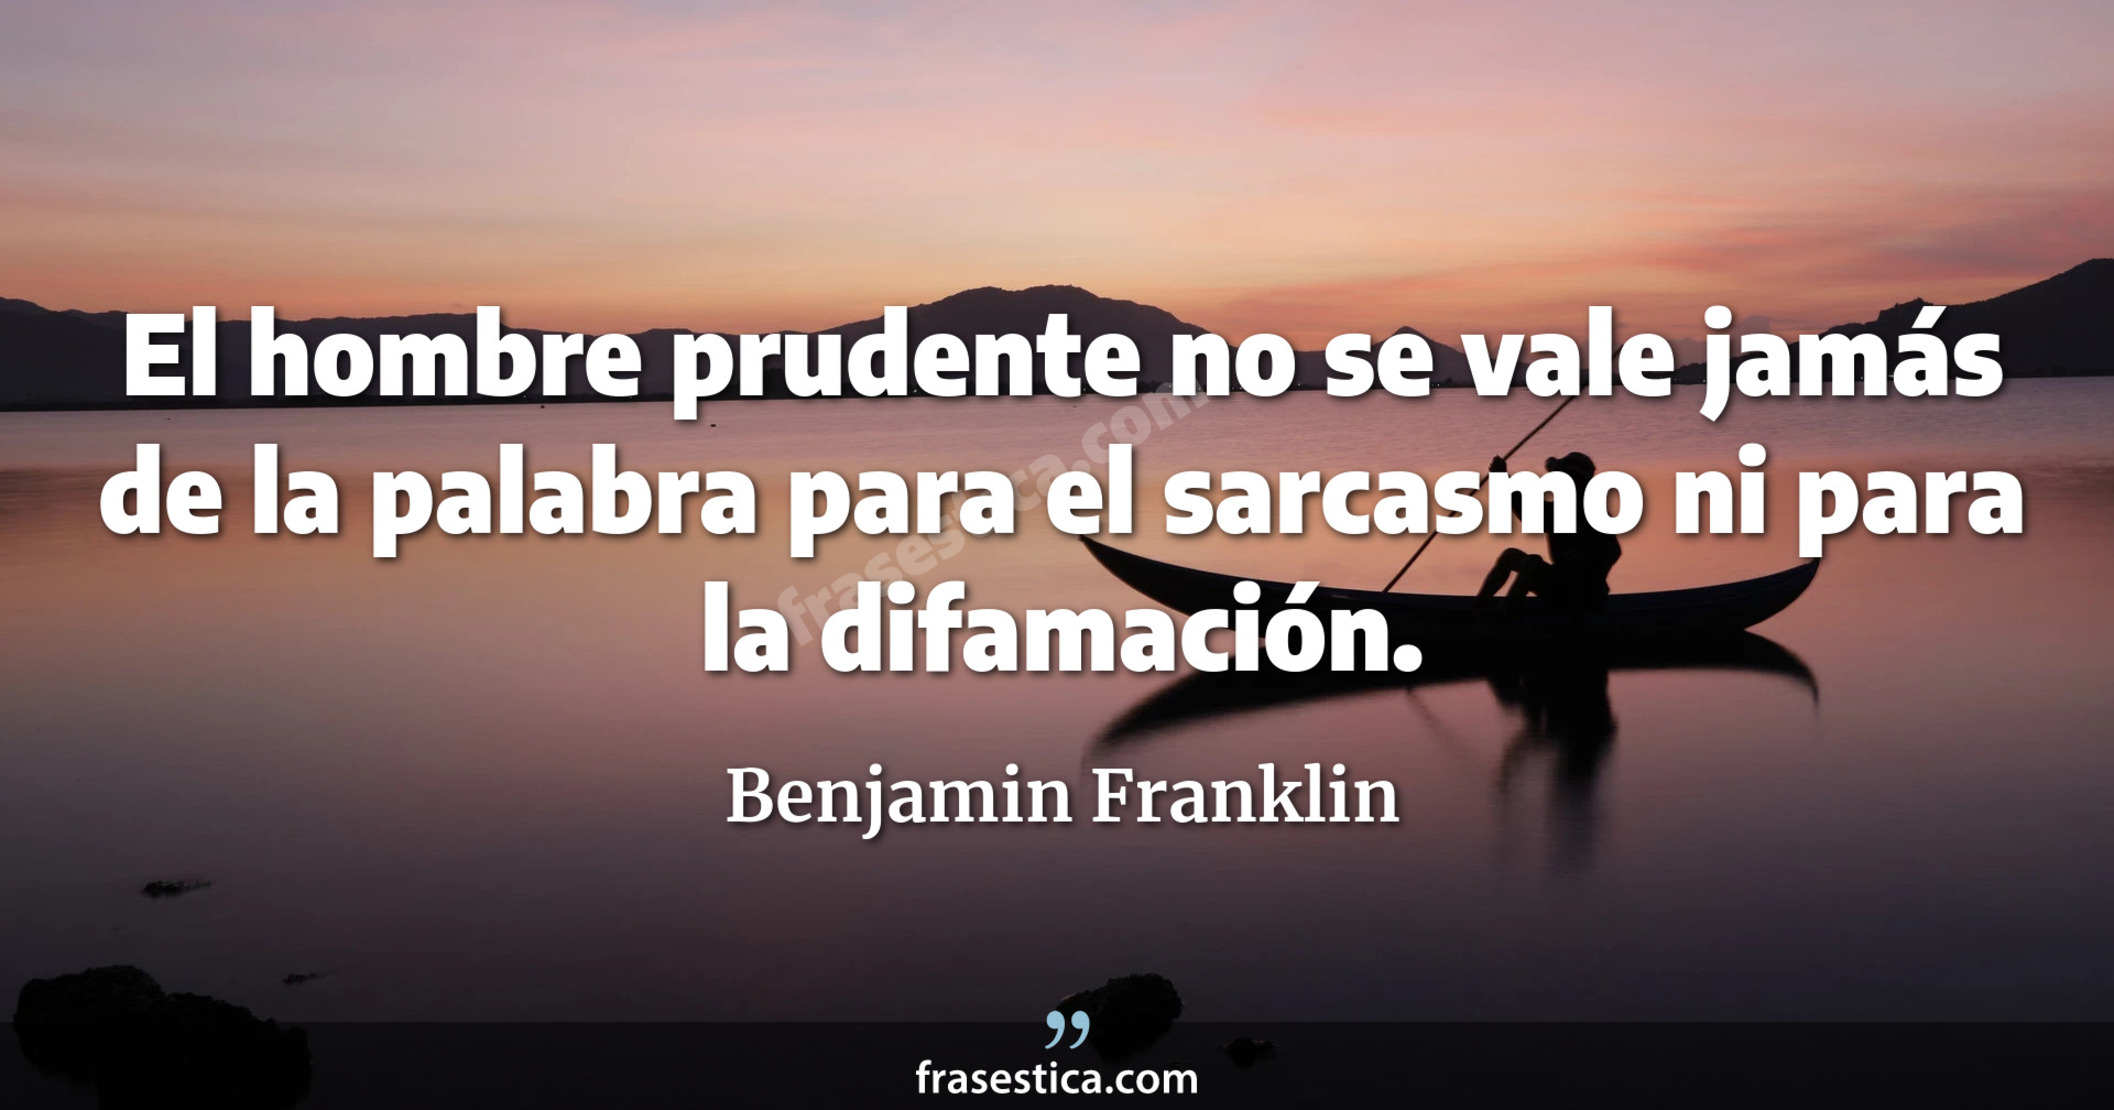 El hombre prudente no se vale jamás de la palabra para el sarcasmo ni para la difamación. - Benjamin Franklin